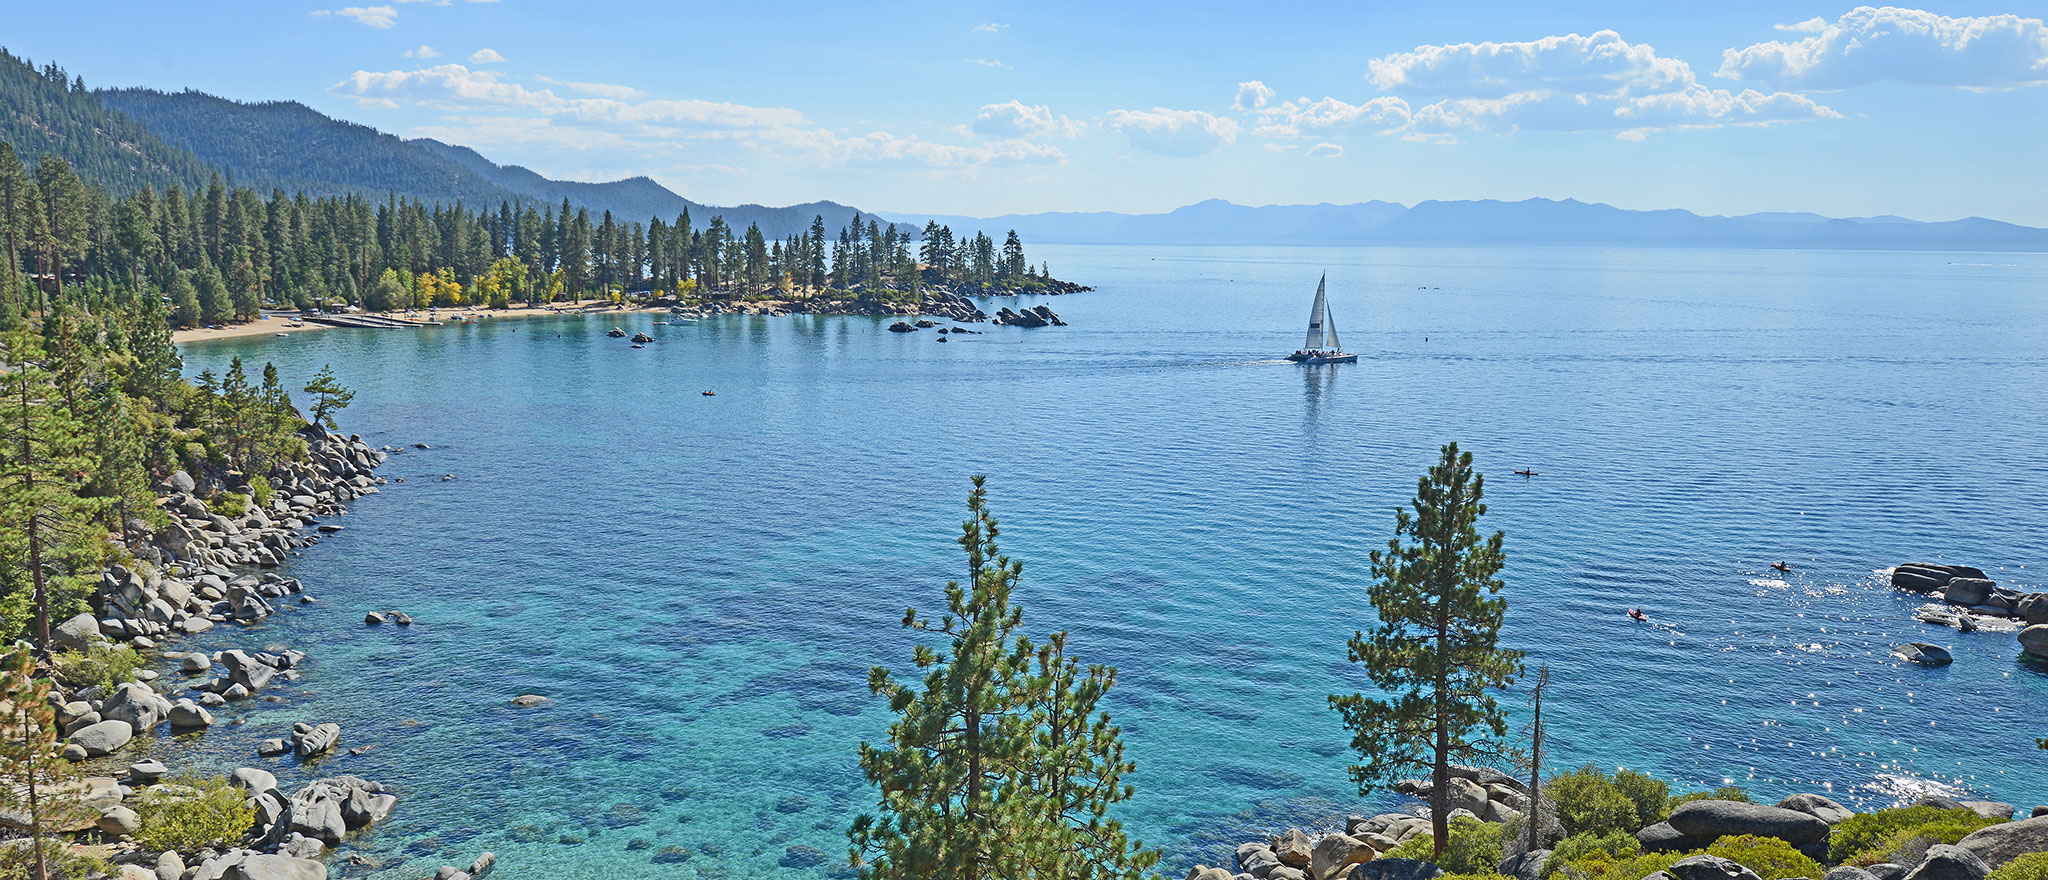 Lake Tahoe image